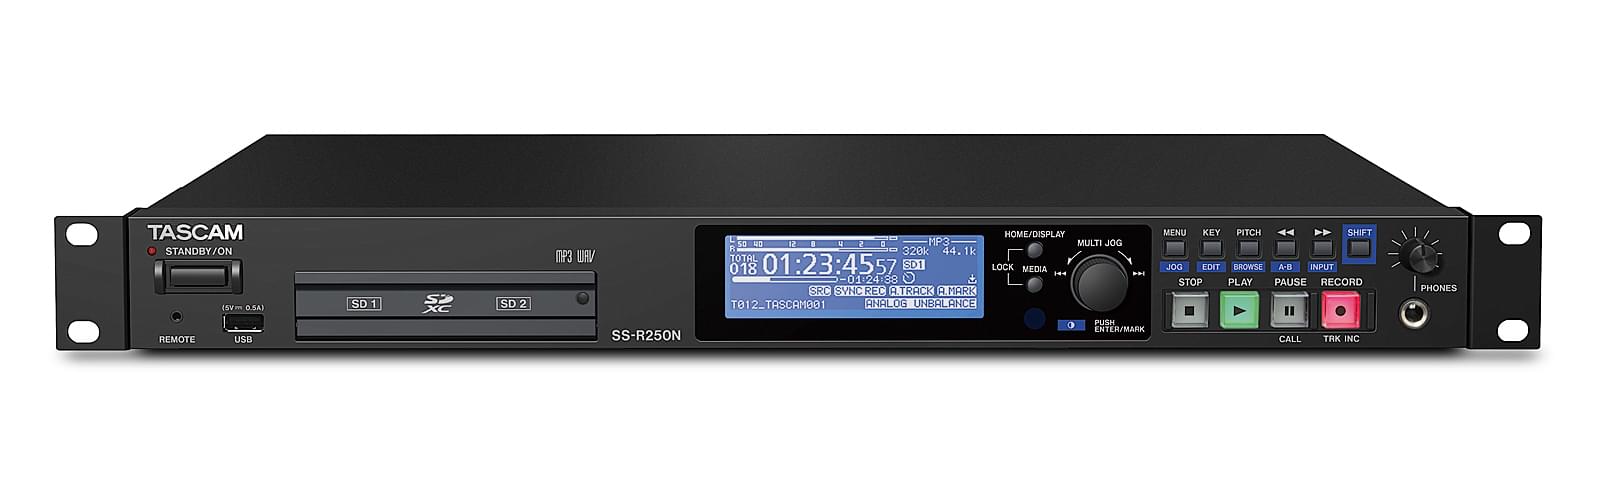 Sieciowy, multimedialny rejestrator audio | Tascam SS-R250N